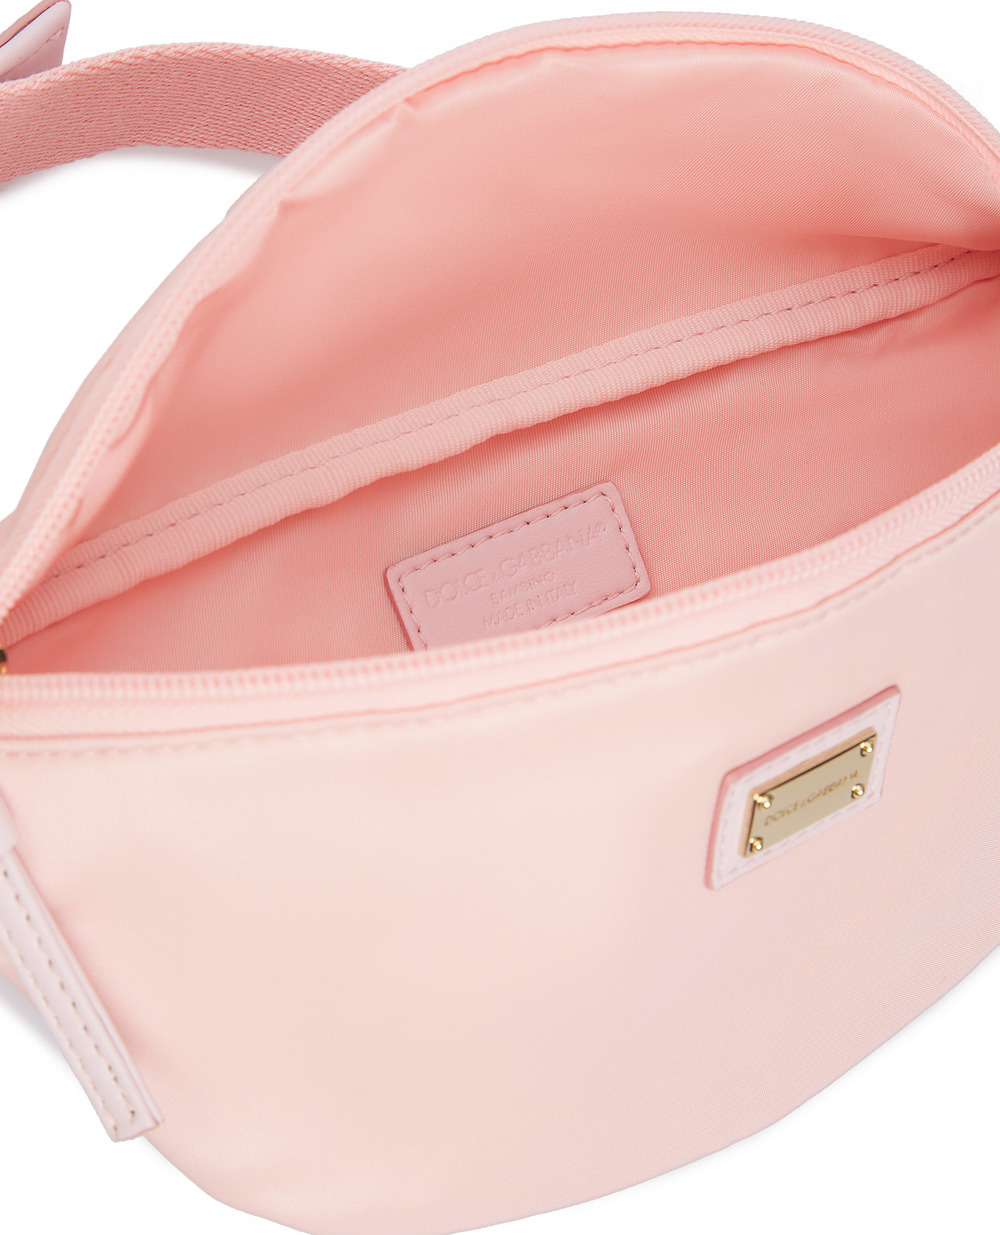 Поясная сумка Dolce&Gabbana EB0208-A9416, розовый цвет • Купить в интернет-магазине Kameron